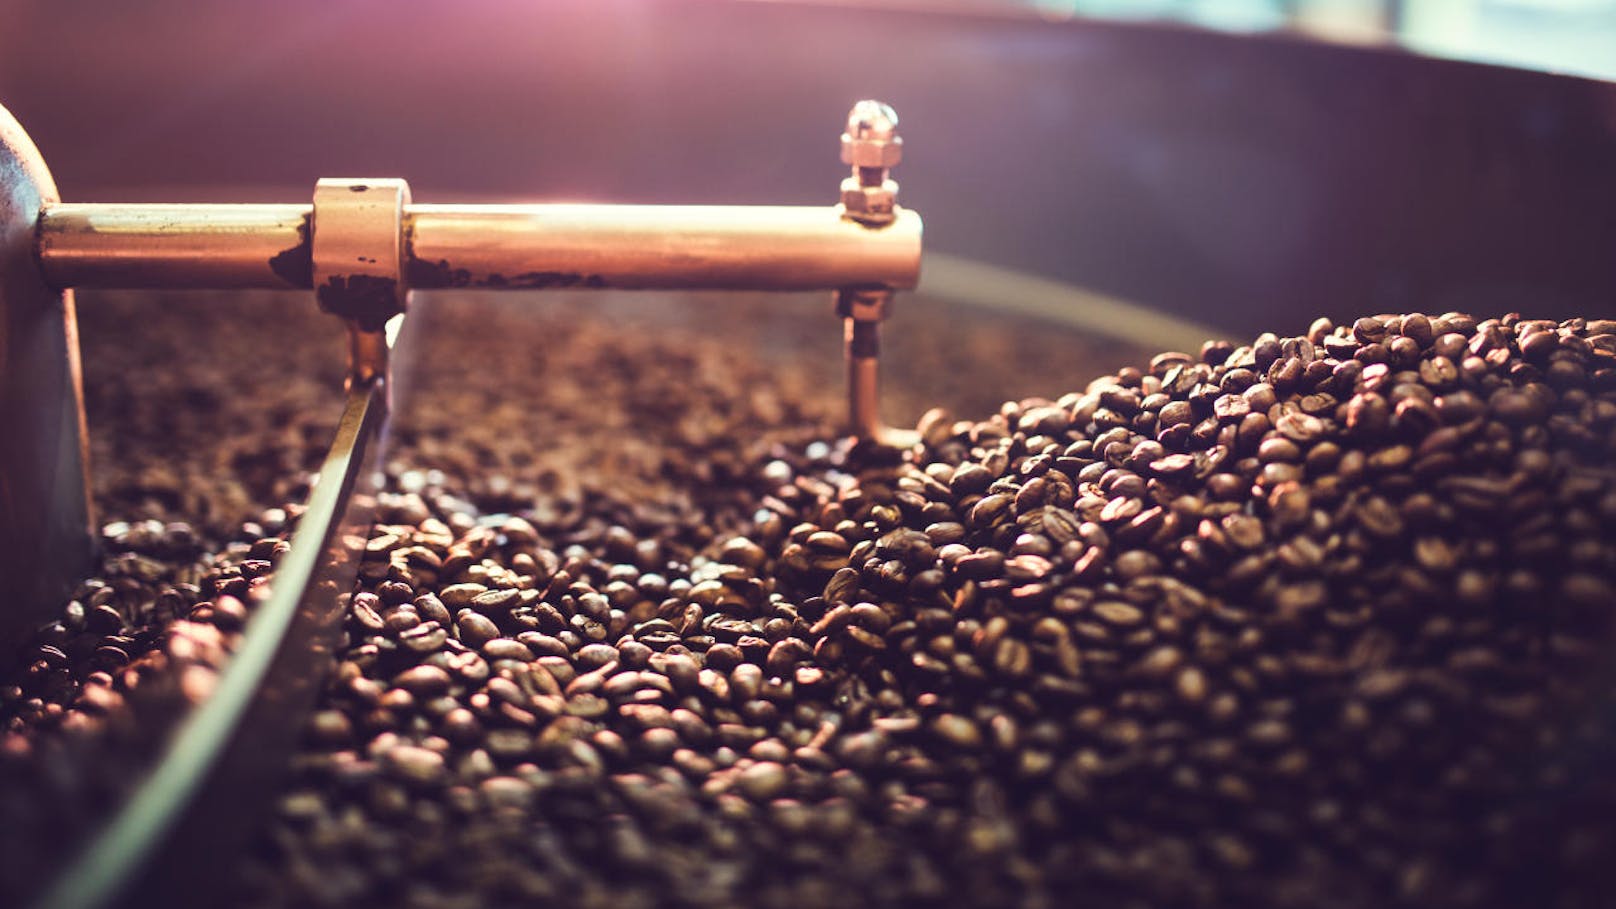 <b>Fitter Einkauf</b>

Je nach Anbau, Ernte und Verarbeitung gibt es auch bei Kaffee qualitative Unterschiede. Einige Pflanzen sind stark mit Pestiziden und anderen chemischen Pflanzengiften belastet. Es lohnt sich also, Bio-Kaffee zu kaufen.